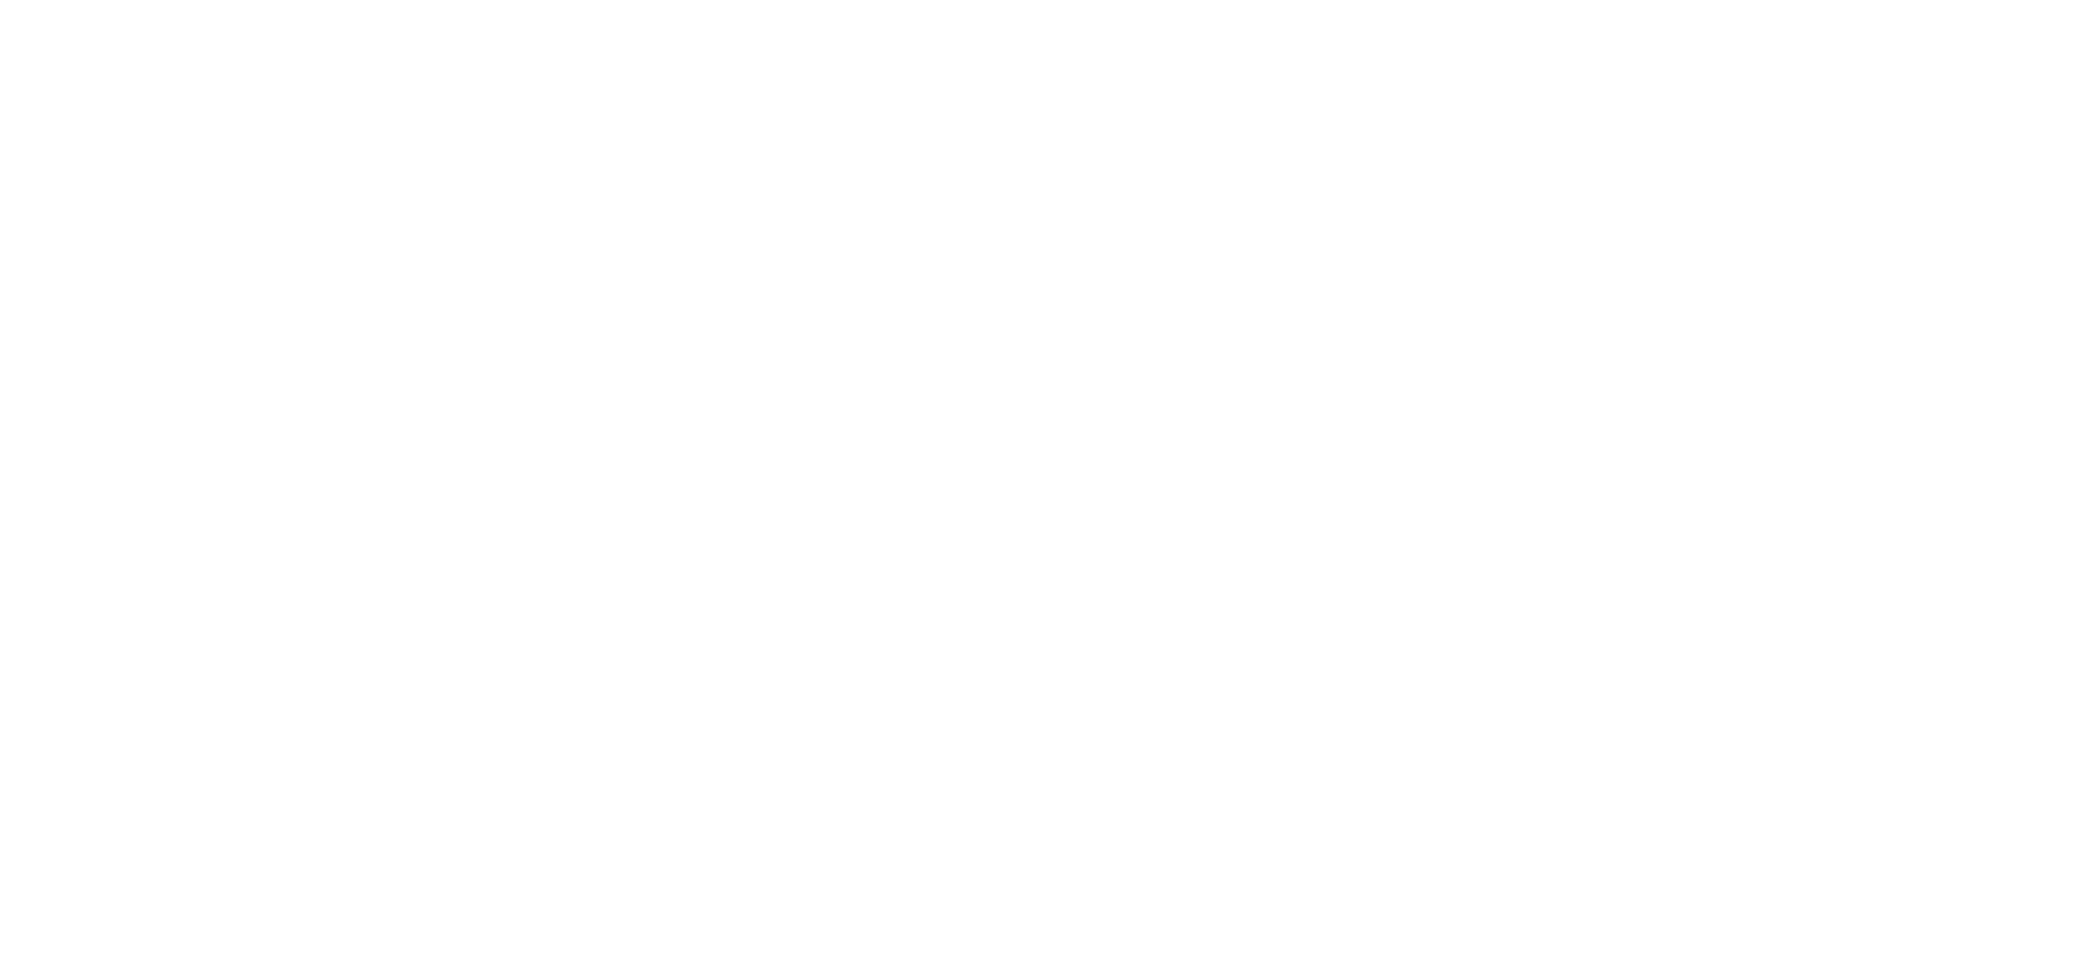 The Climbing Executive